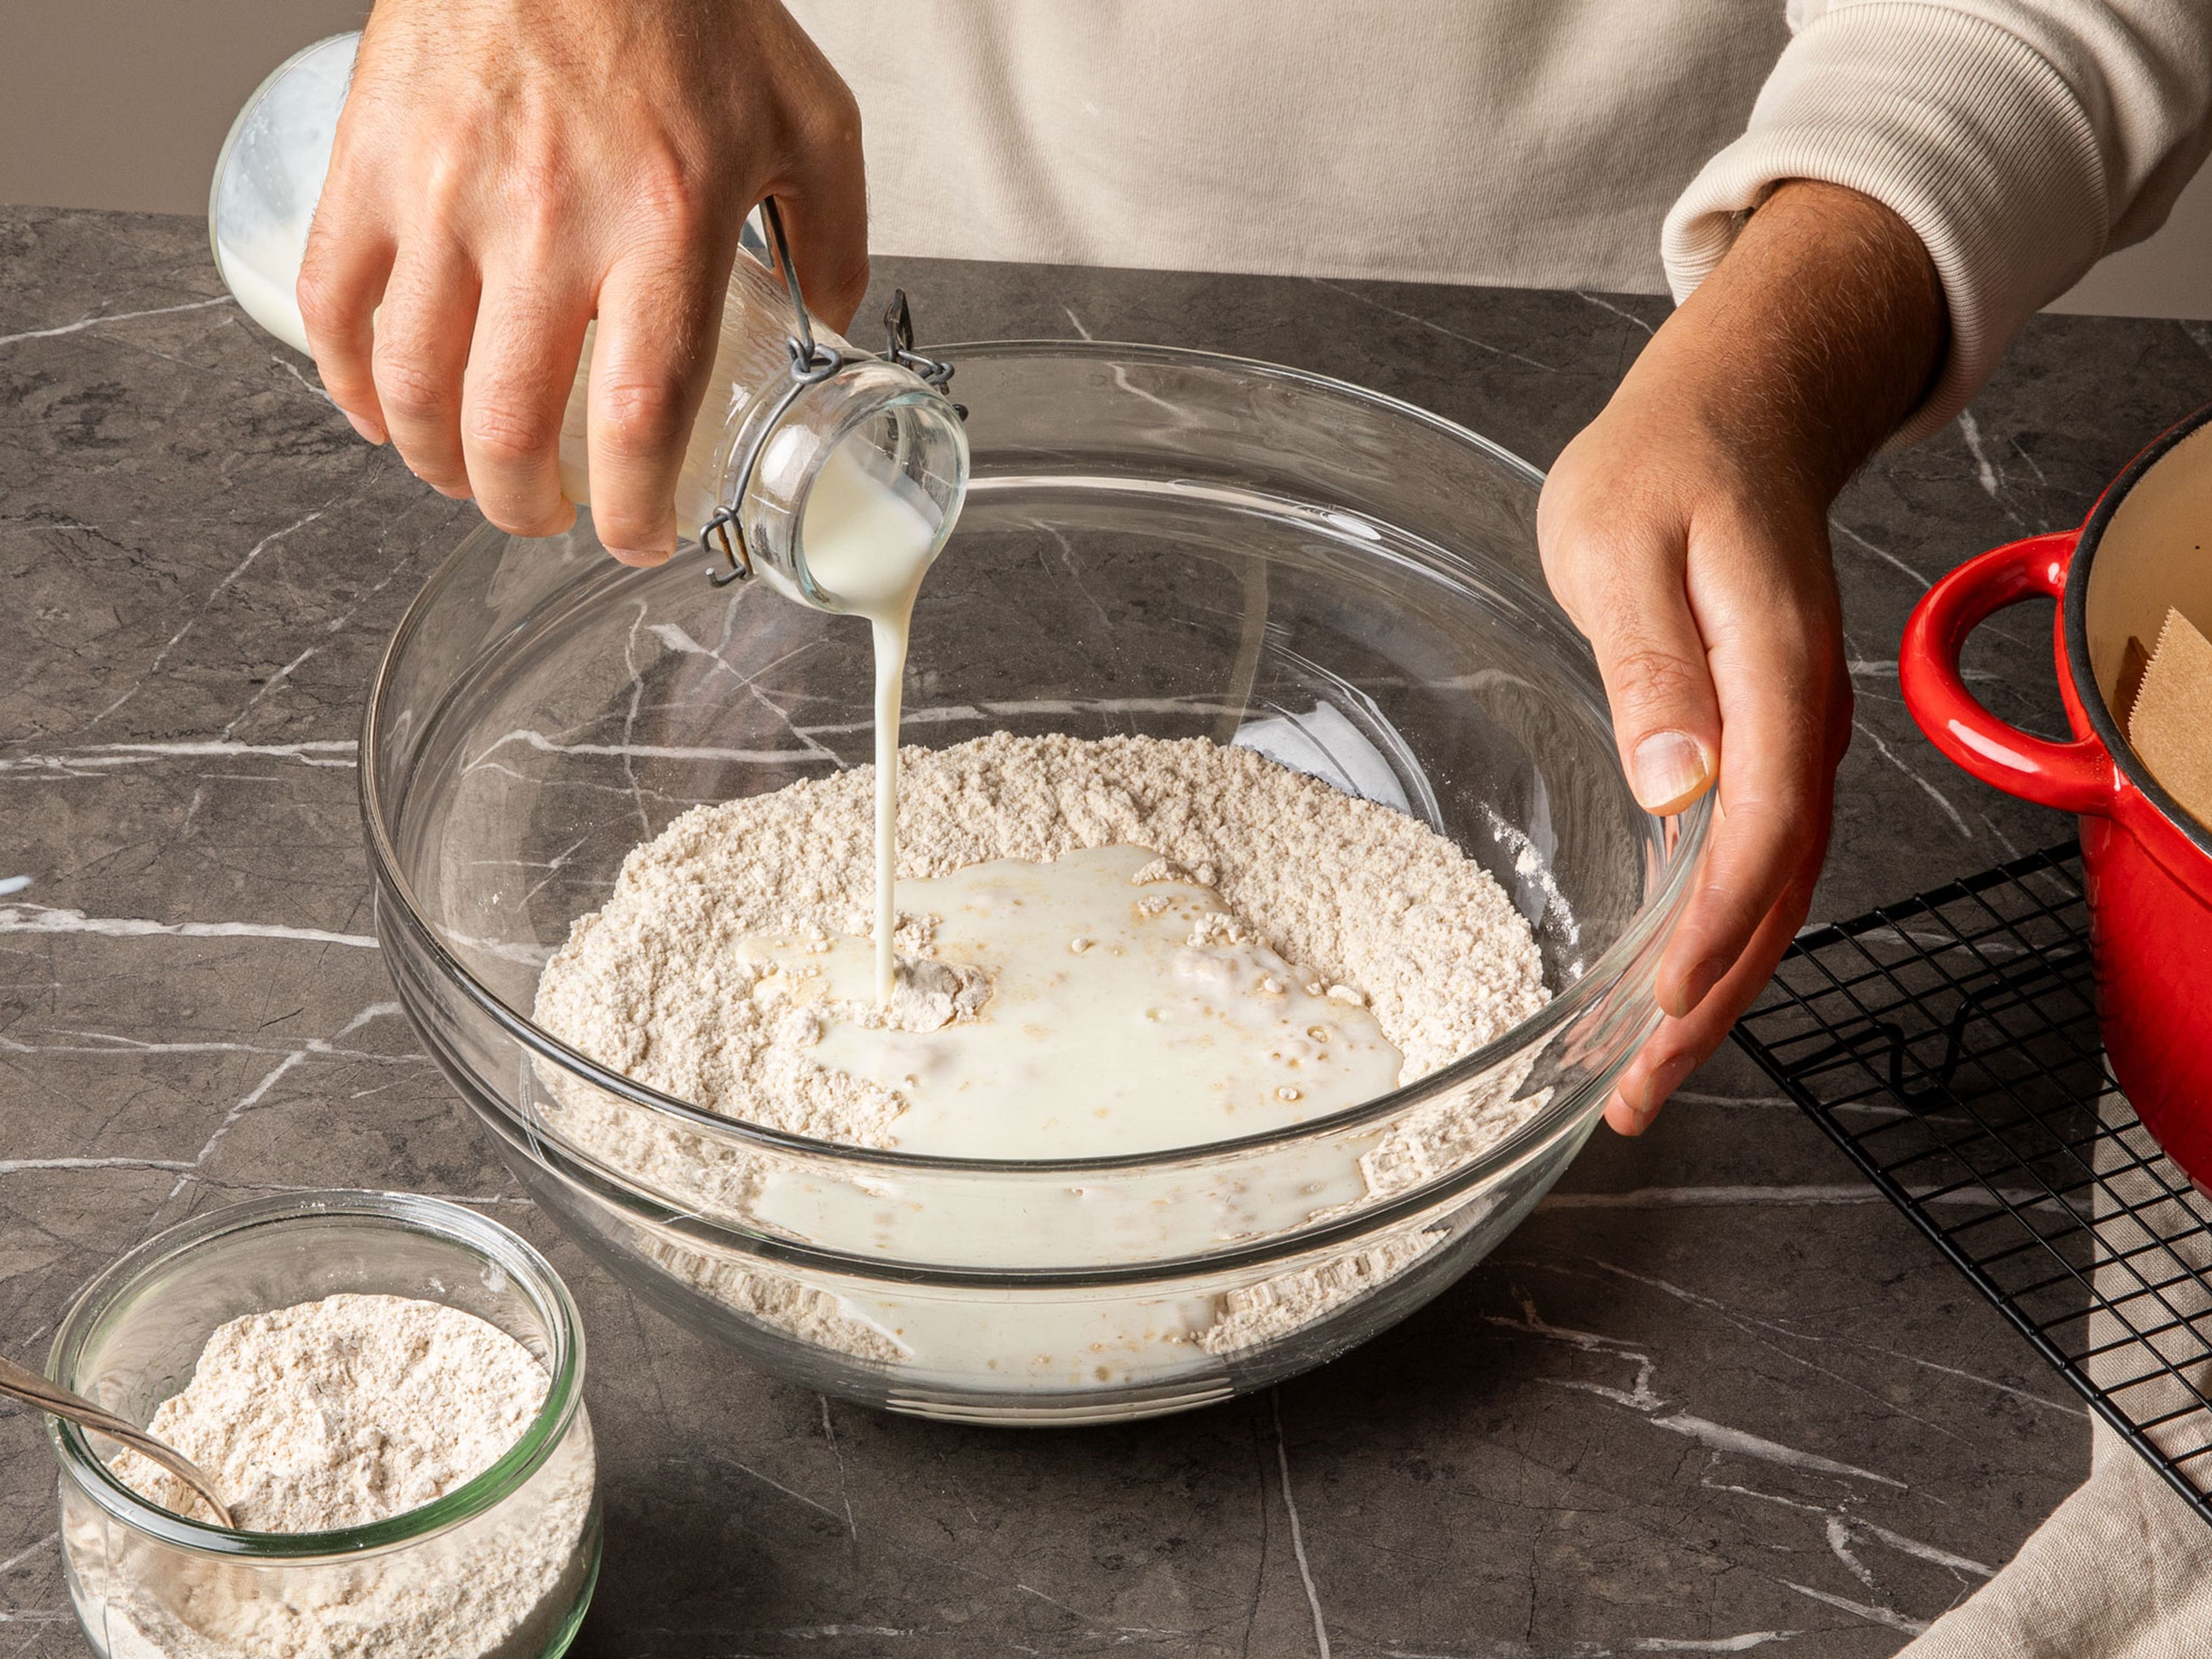 Backofen auf 230°C (Ober-/Unterhitze) vorheizen. In einer großen Schüssel Mehl, Backnatron und Salz mischen. In der Mitte eine Mulde formen und die Buttermilch hineingeben. Alles mit den Händen oder einem Gummispatel verrühren, bis alle Zutaten gerade vollständig vermengt sind. Den Teig mit Hilfe des Spatels zu einer groben Kugel formen.